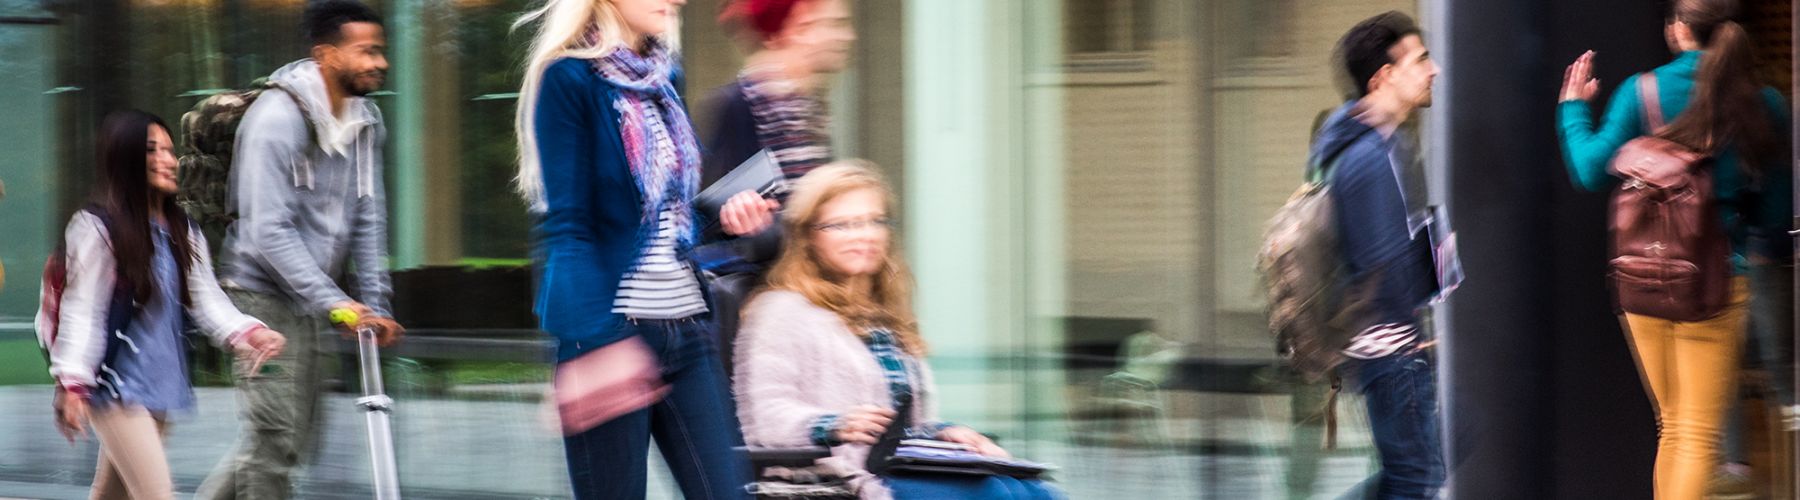 Alternativtext: Dieses Headerfoto zeigt junge Menschen mit Rollstuhl, Tretroller & zu Fuß auf ihrem Weg zu einem Hochschuleingang.